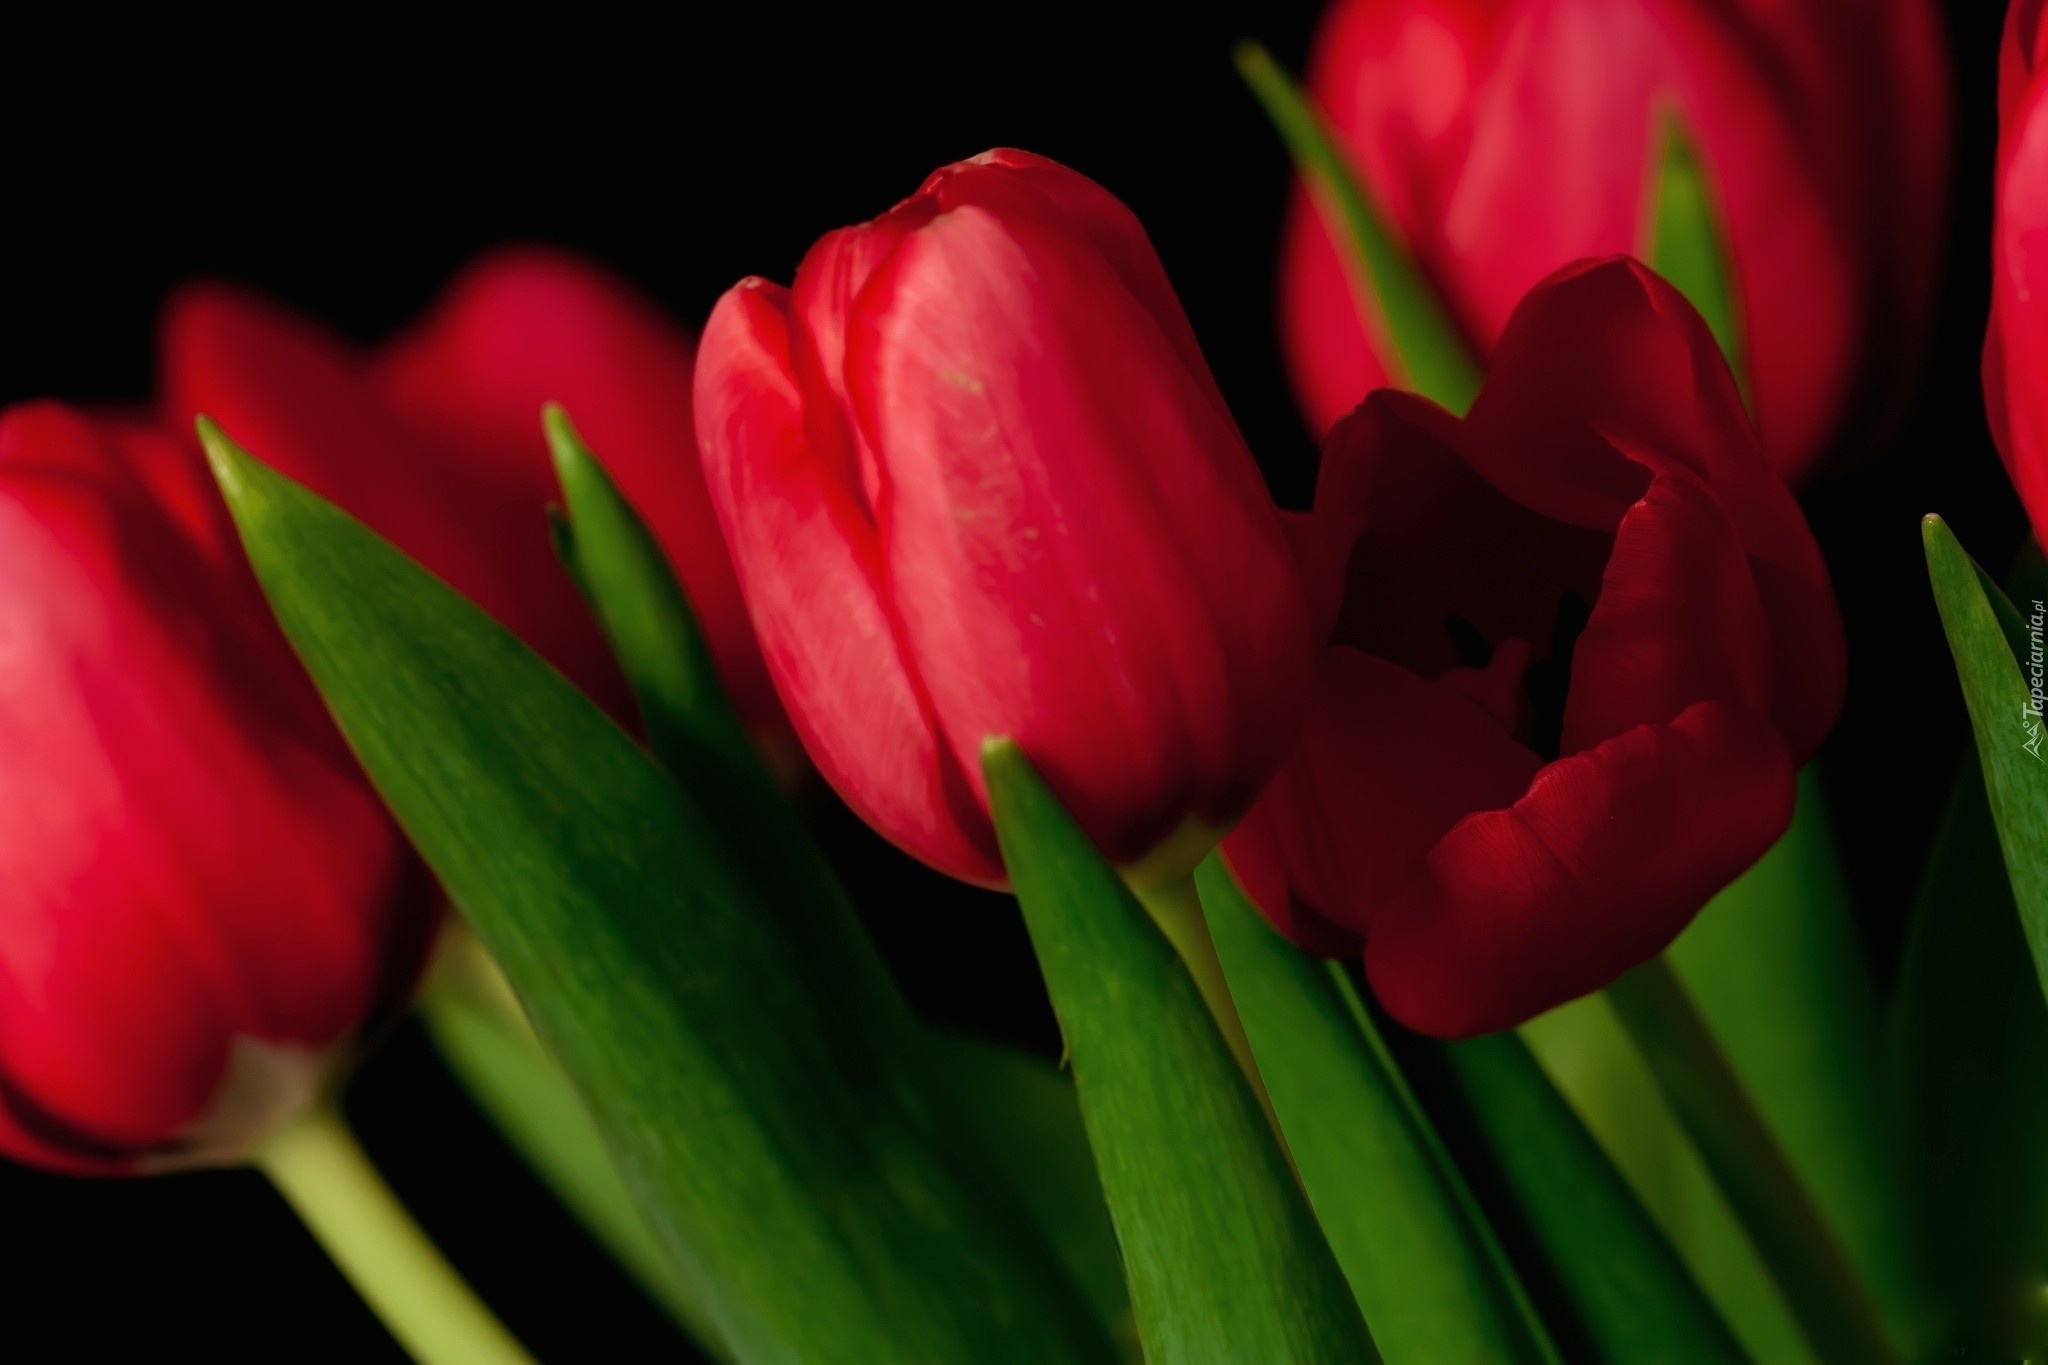 Обои с тюльпанами на телефон. Цветы тюльпаны. Красные тюльпаны. Красивые тюльпаны. Тюльпаны на заставку.